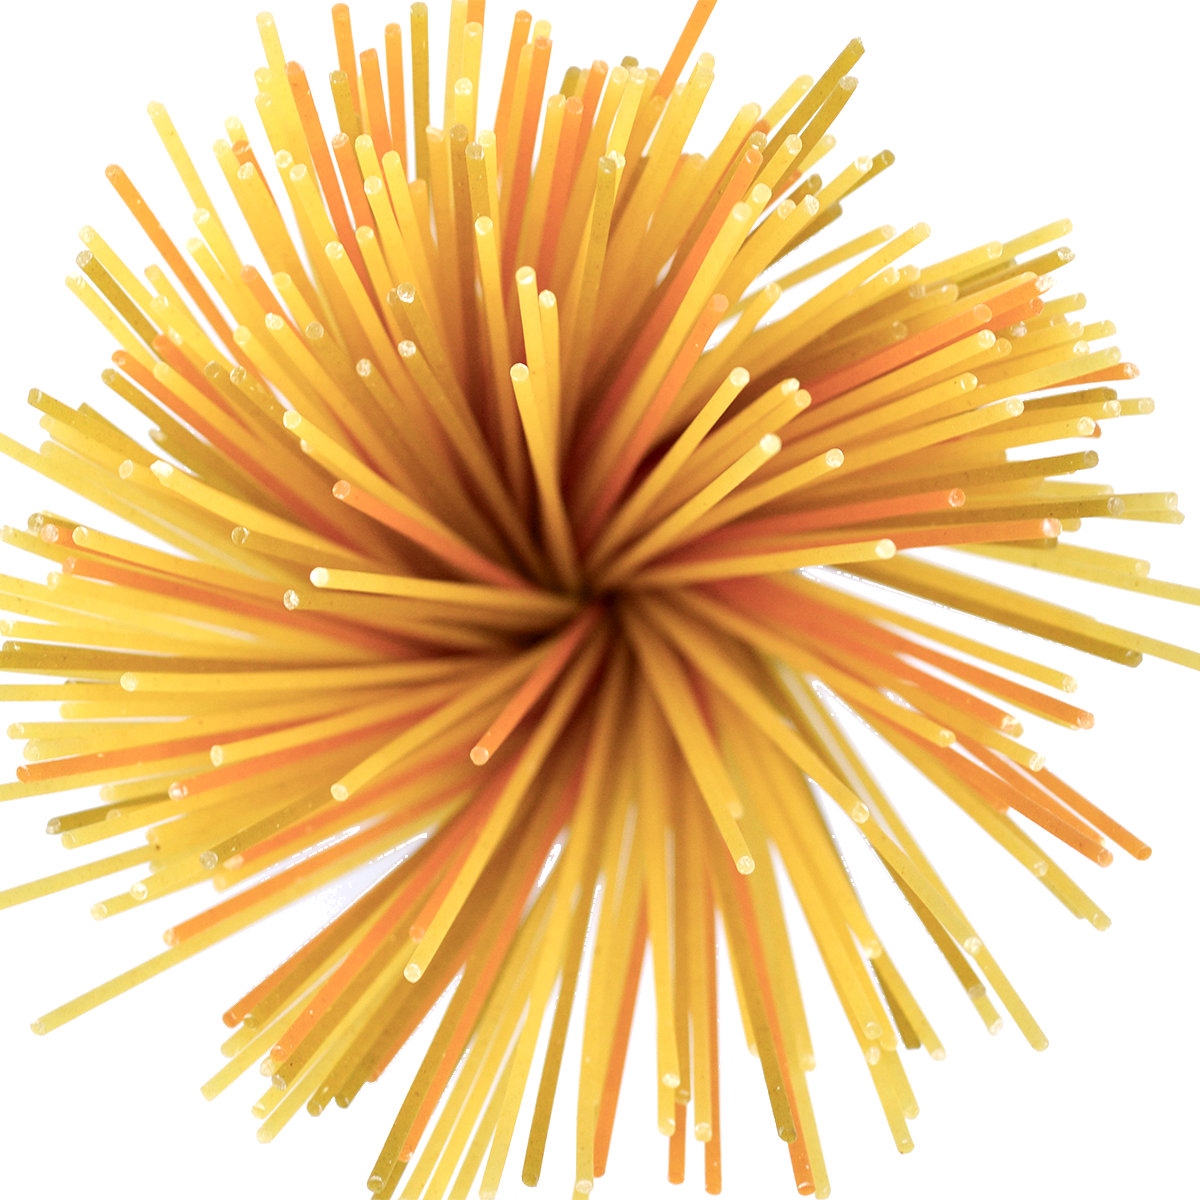 Nudeln, italienische Spaghetti, 500 g